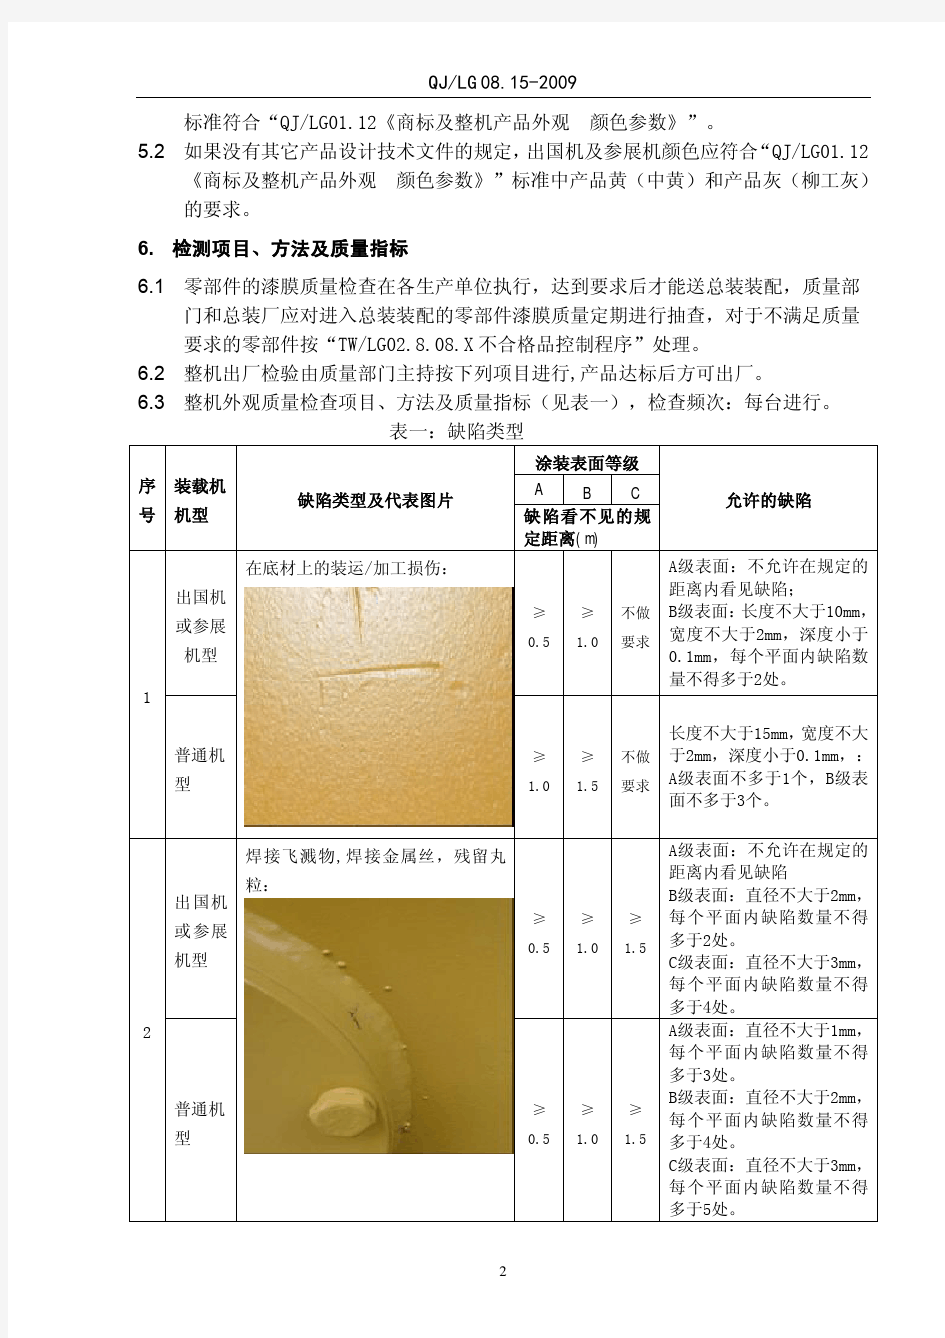 柳工LG0815-2009机械产品涂装质量验收标准